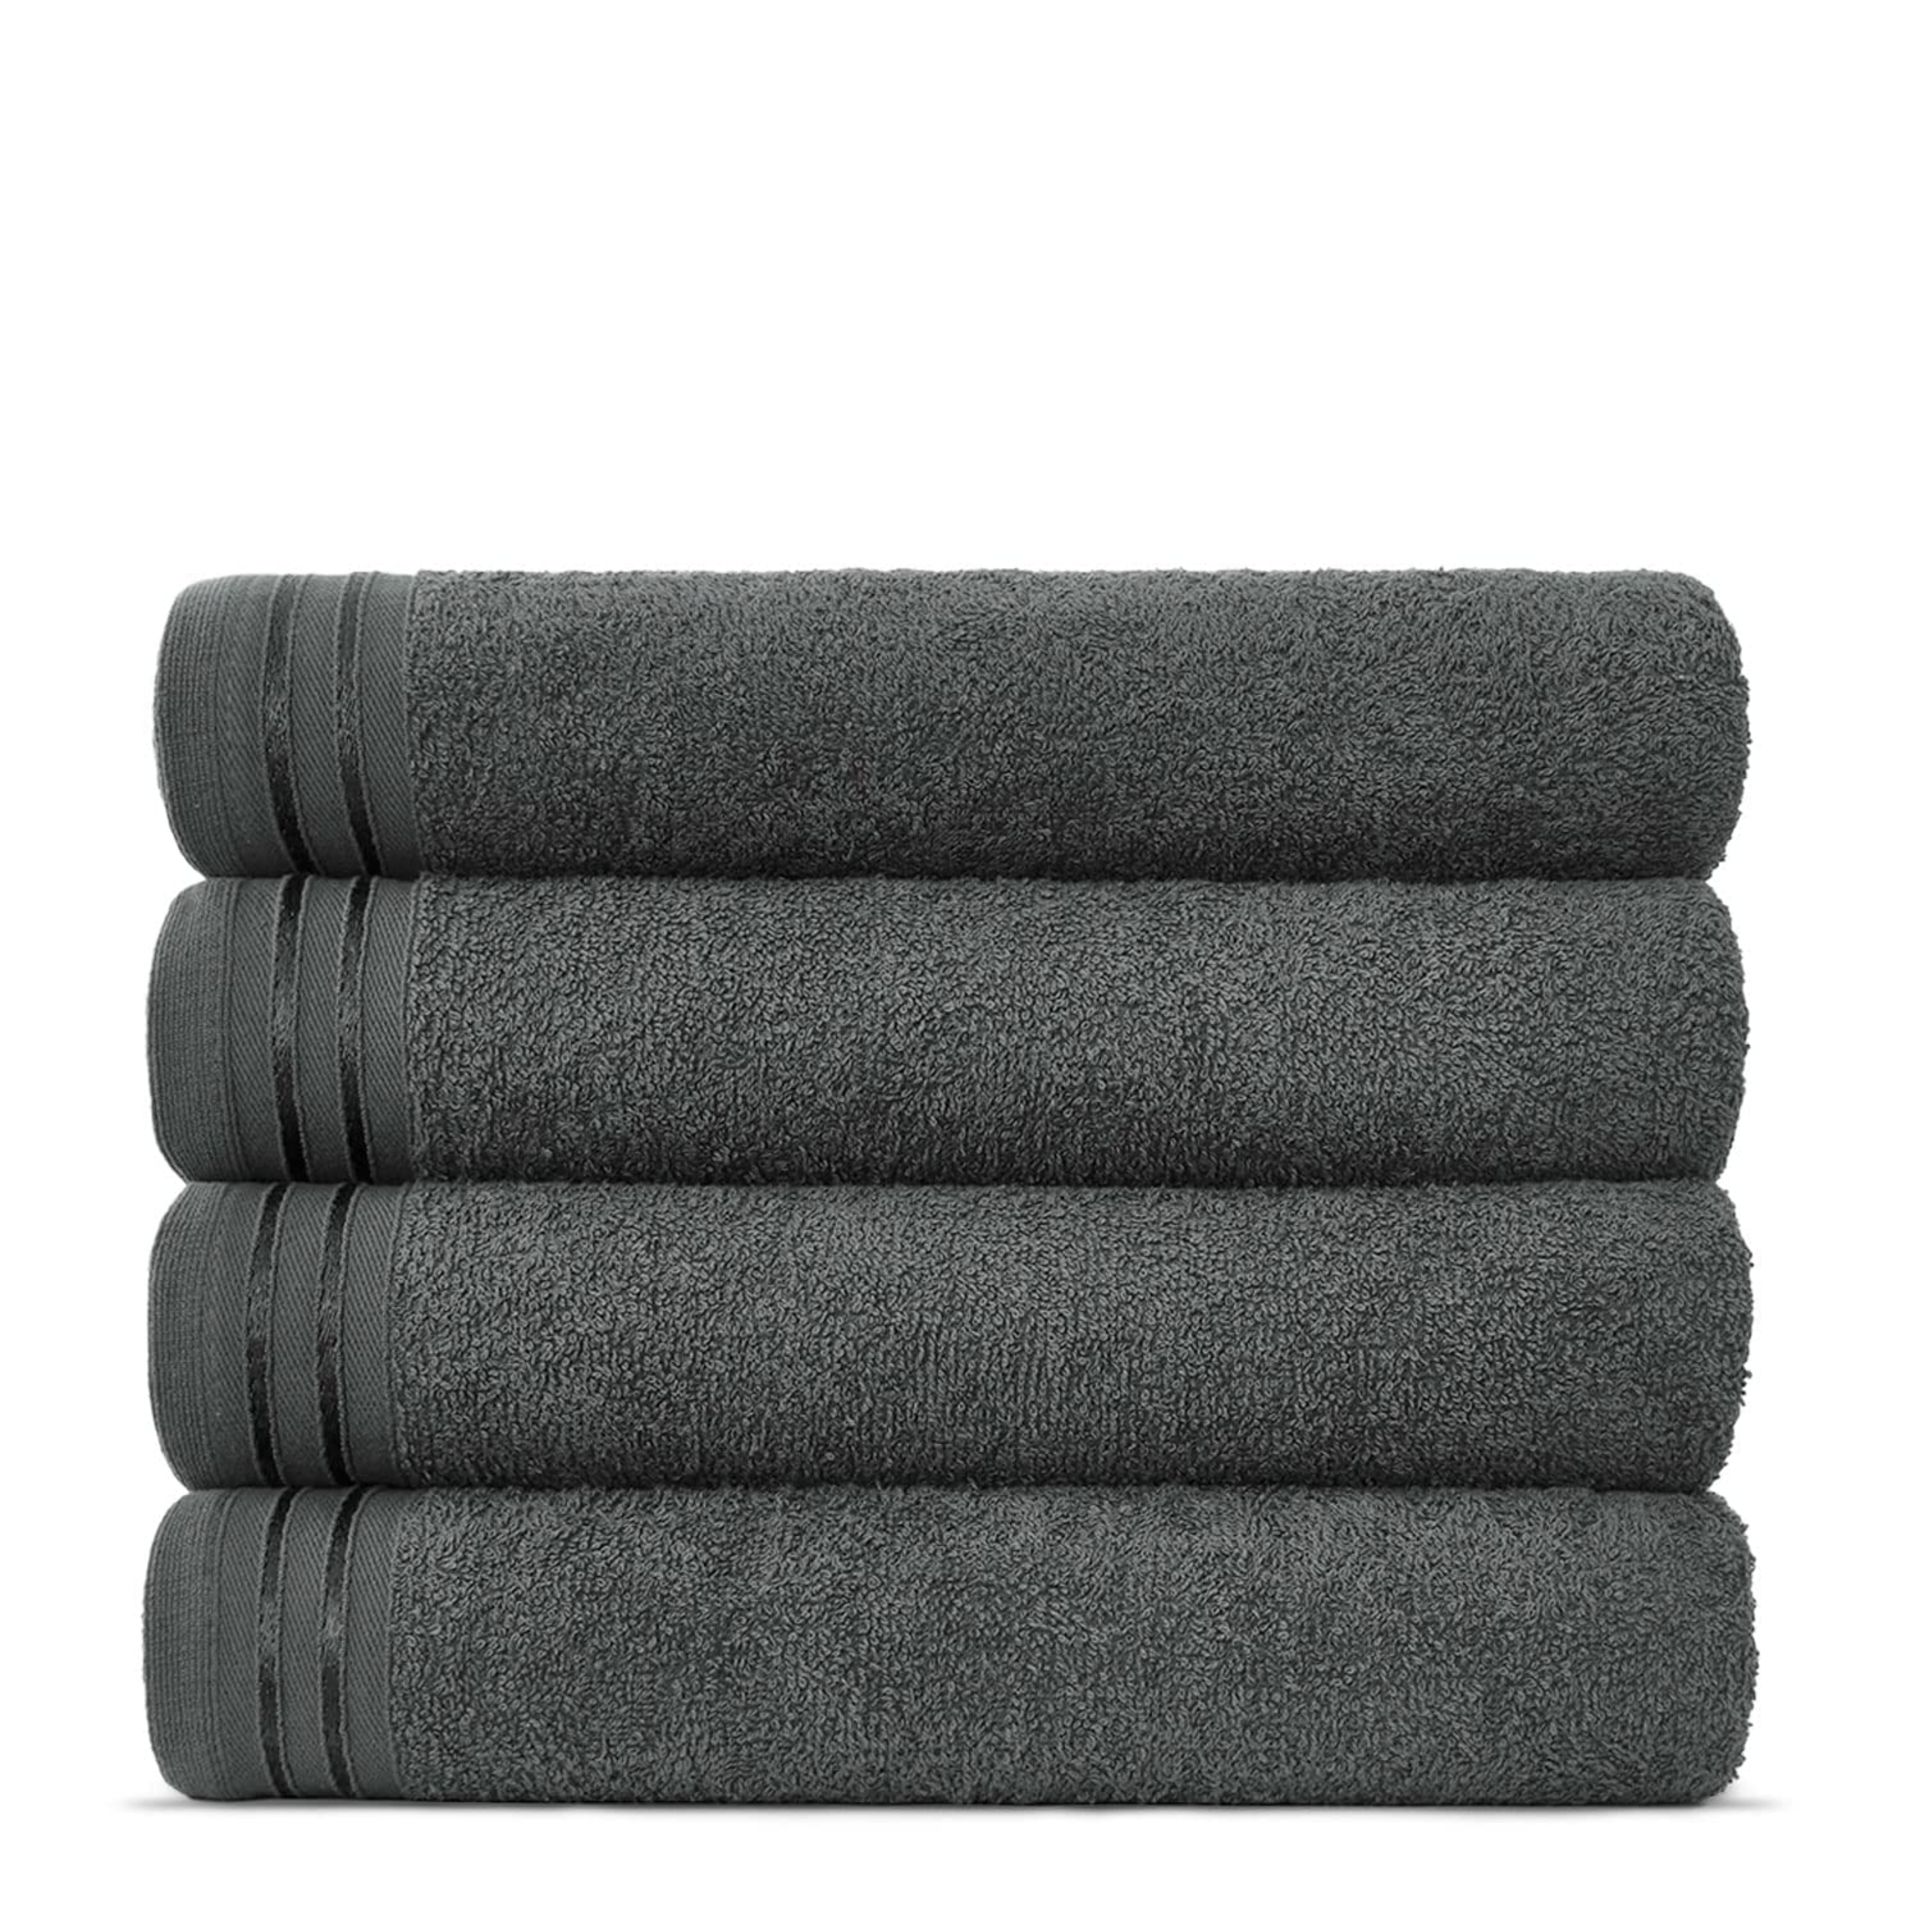 RRP £22.81 Lions Bath Towels - Set of 4 Bathroom Bath Sheets